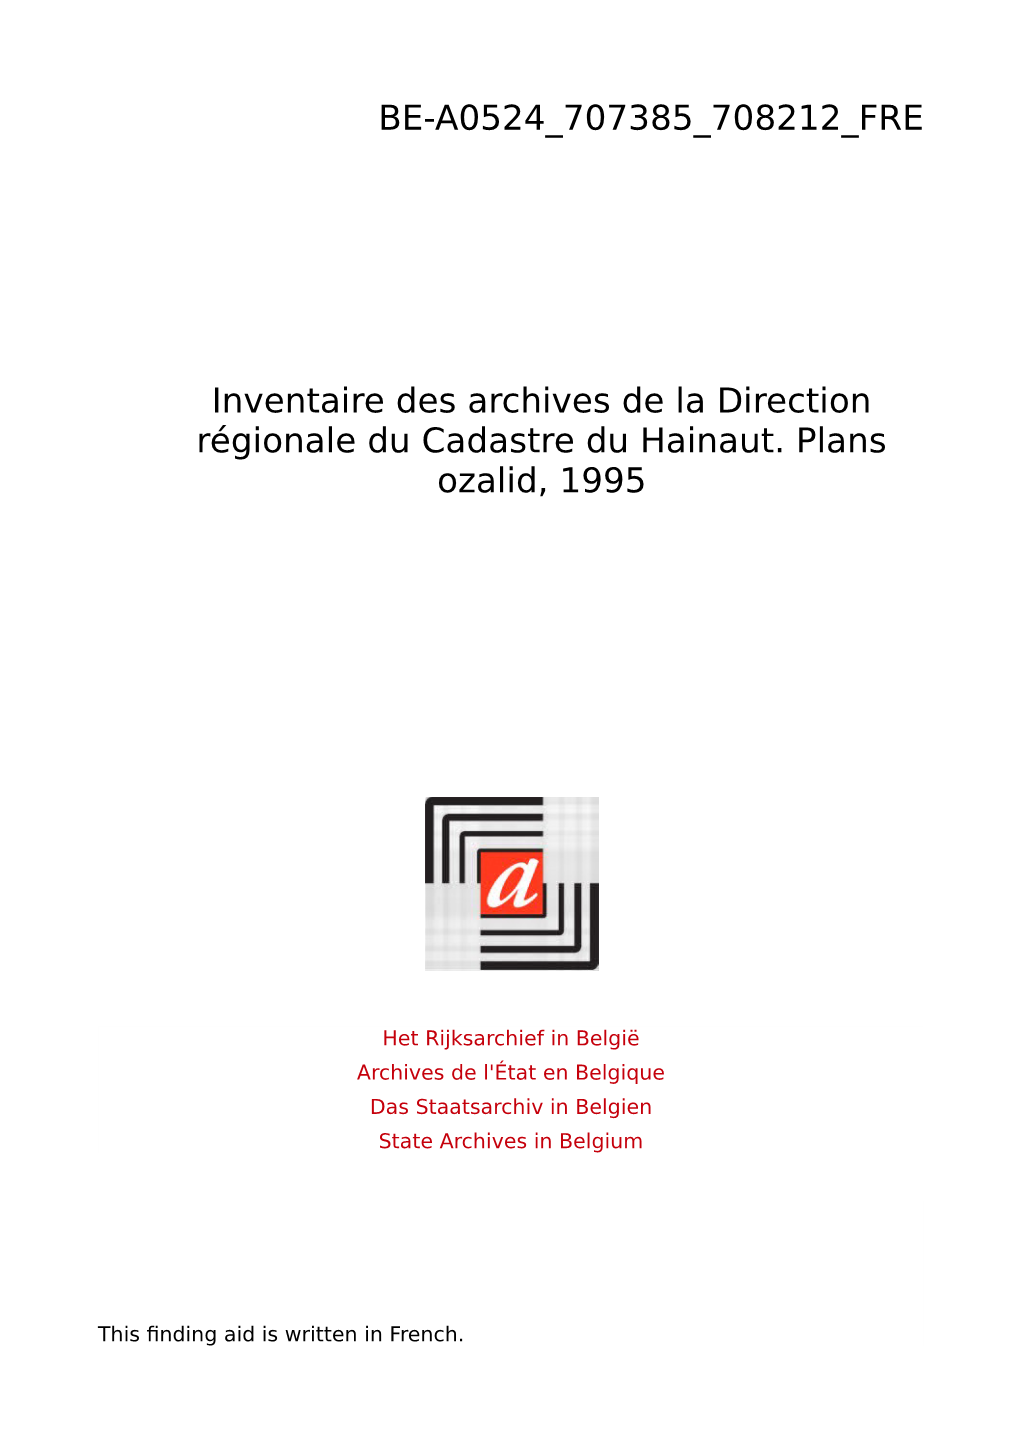 Direction Régionale Du Cadastre Hainaut. Plans Ozalid 1995